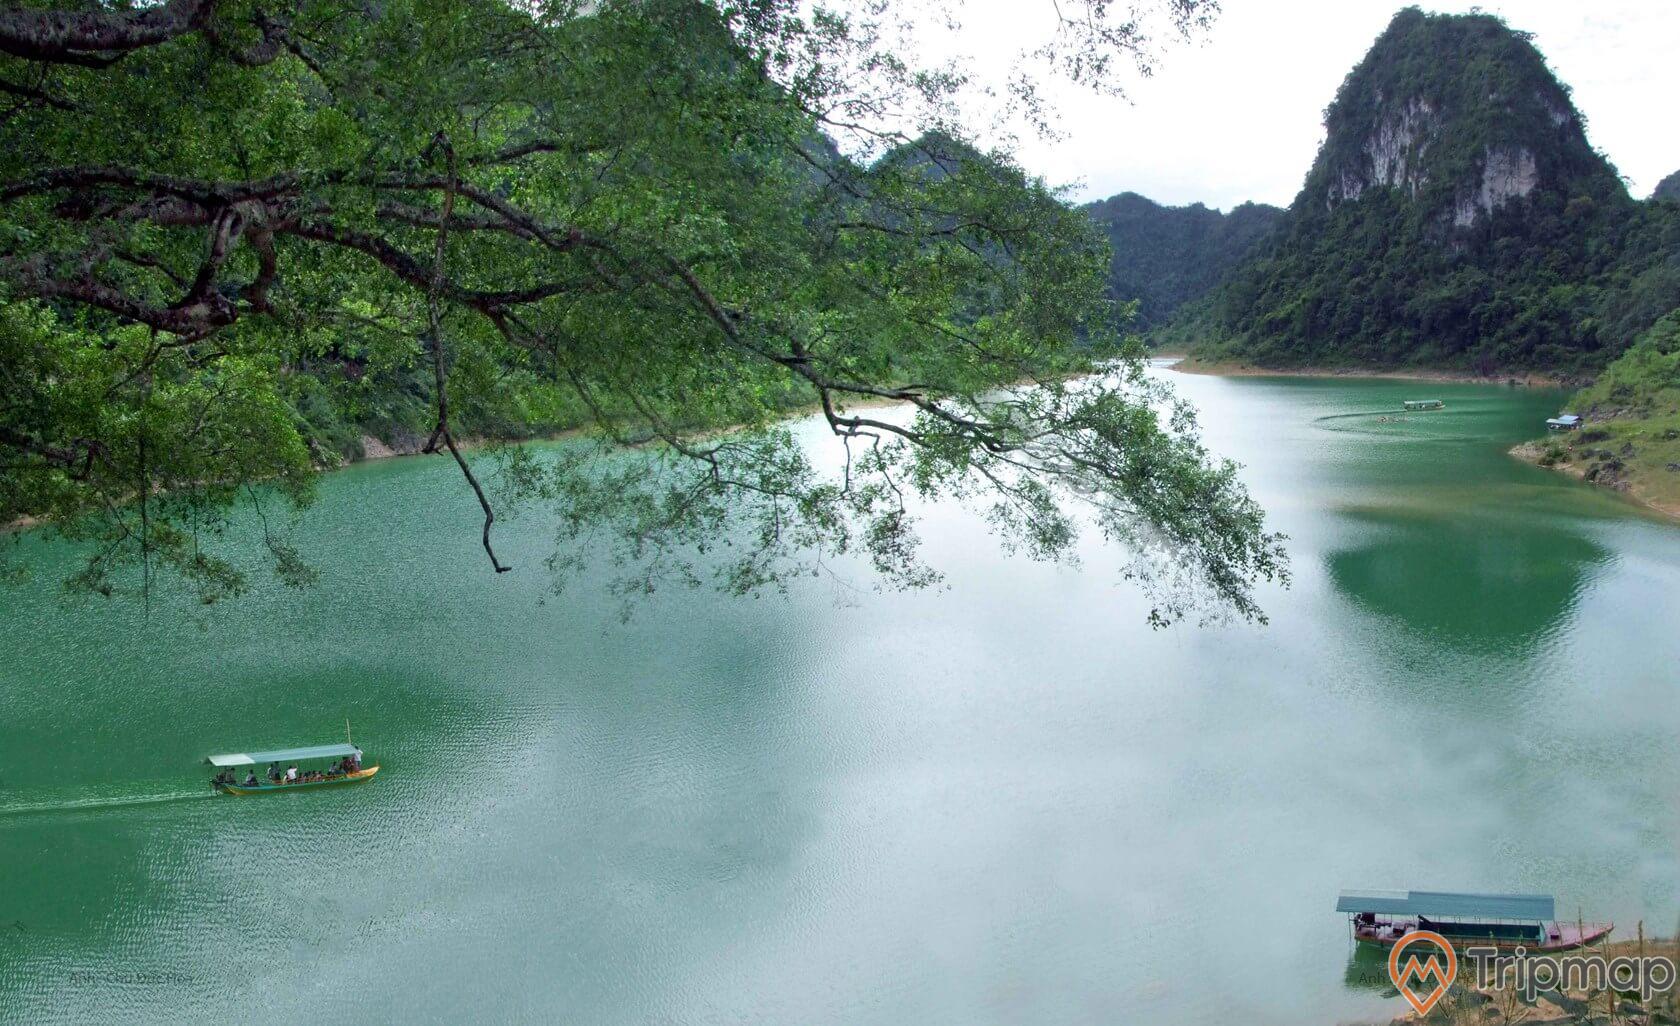 Toàn cảnh hồ Thang Hen, tán cây gần hồ nước, núi đồi ở phía xa, chiếc thuyền đang đi giữa hồ nước và 1 chiếc thuyền khác đang đậu bên bờ hồ, ảnh chụp từ trên cao